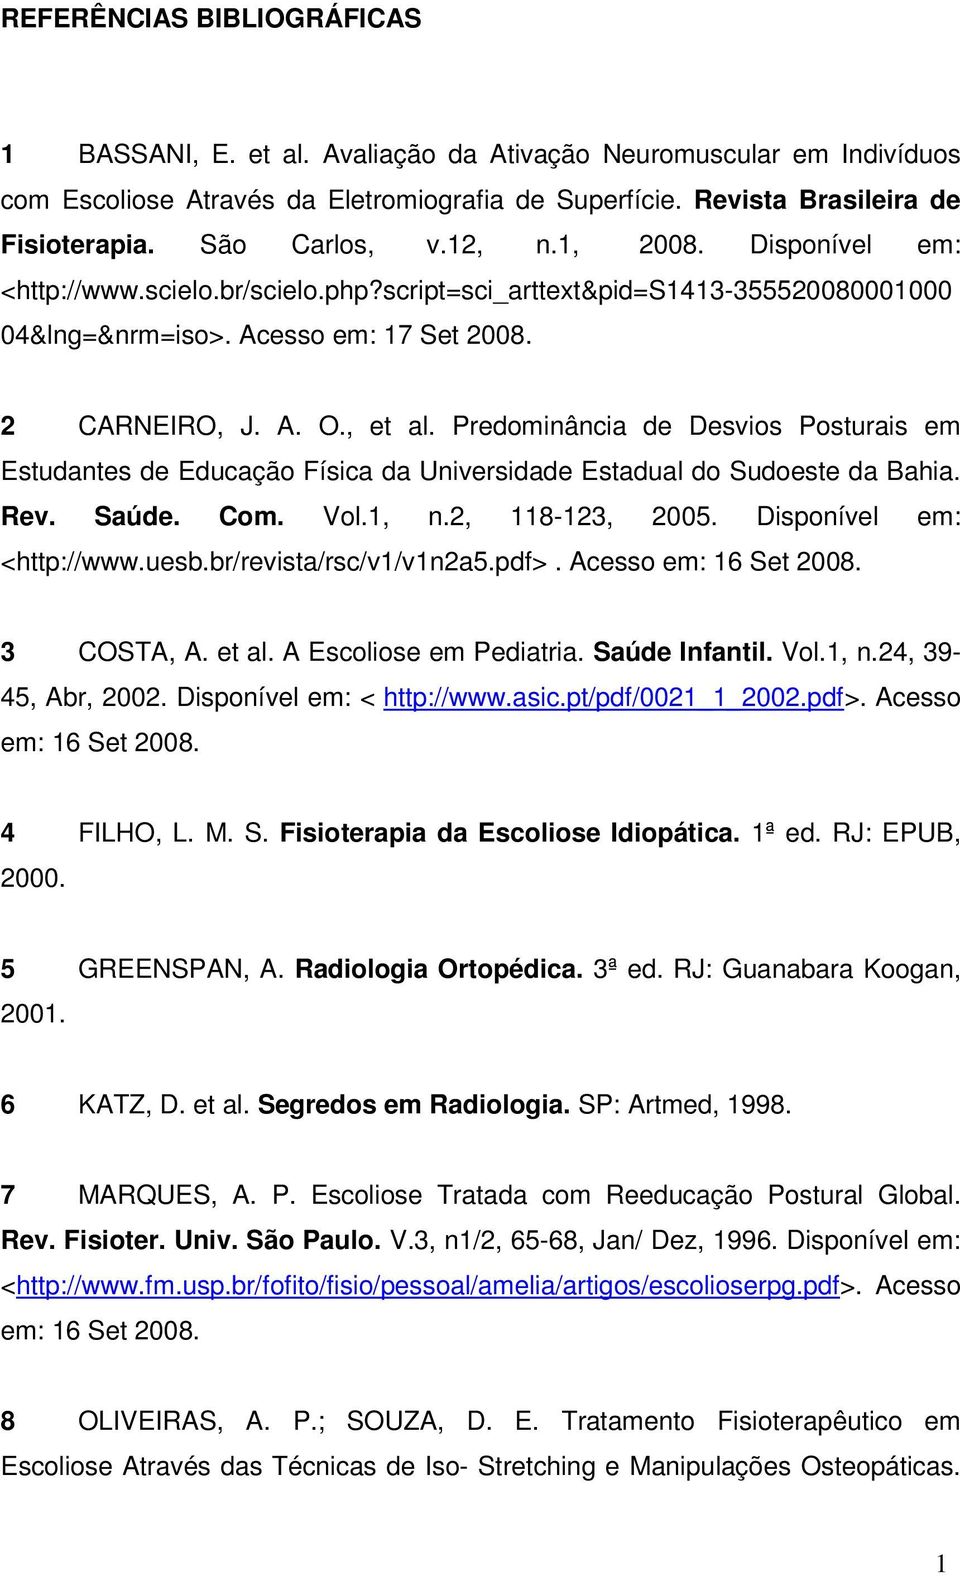 Predominância de Desvios Posturais em Estudantes de Educação Física da Universidade Estadual do Sudoeste da Bahia. Rev. Saúde. Com. Vol.1, n.2, 118-123, 2005. Disponível em: <http://www.uesb.